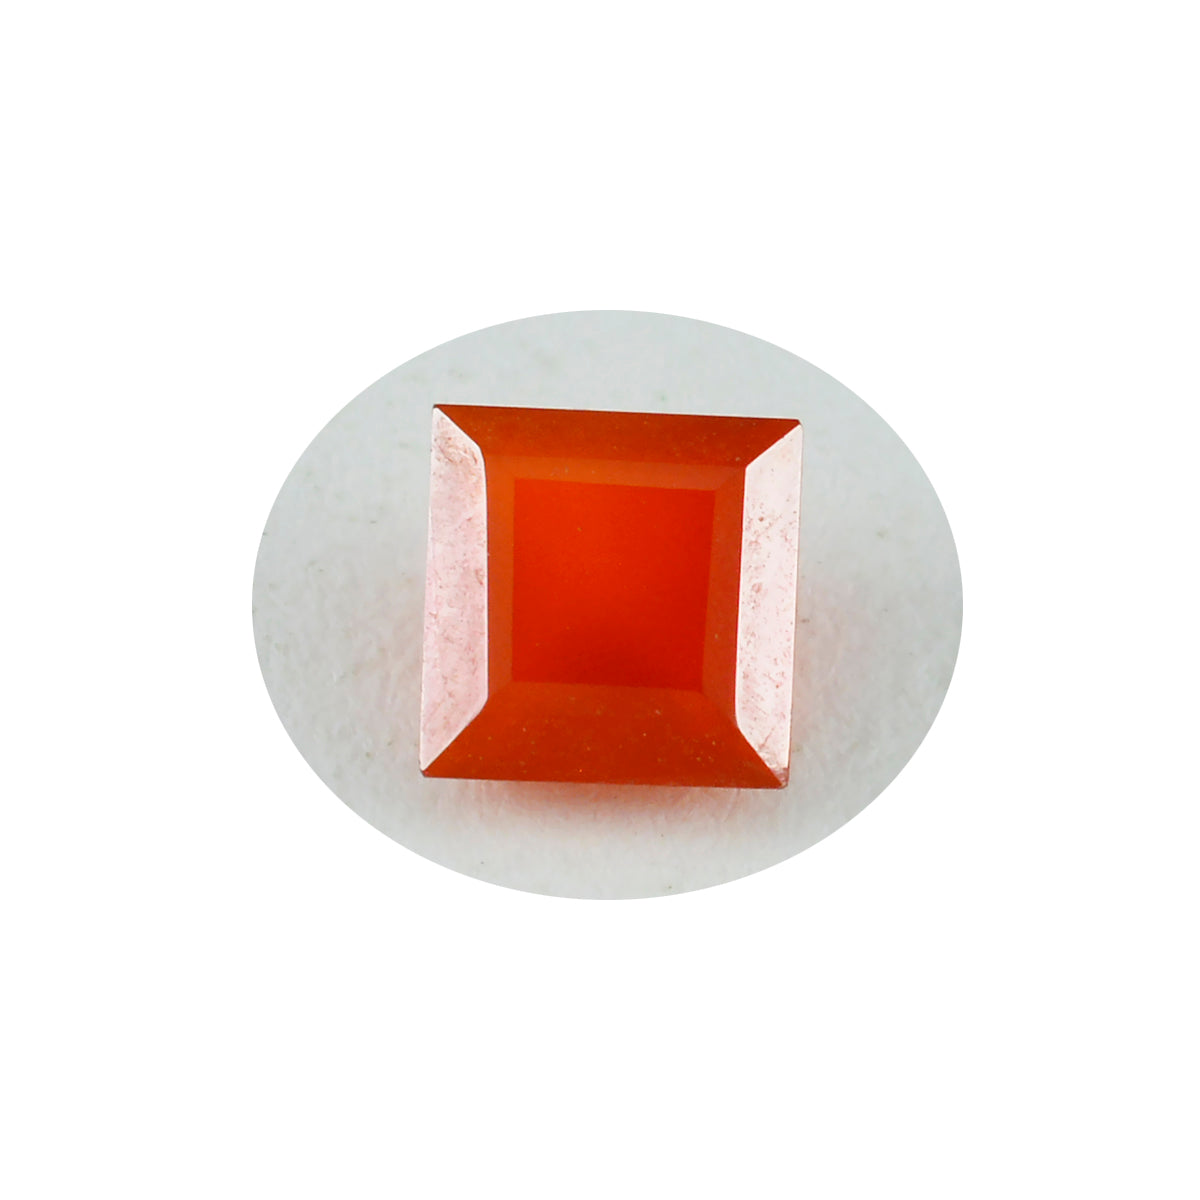 Riyogems 1PC echte rode onyx gefacetteerde 10x10 mm vierkante vorm knappe kwaliteit losse steen